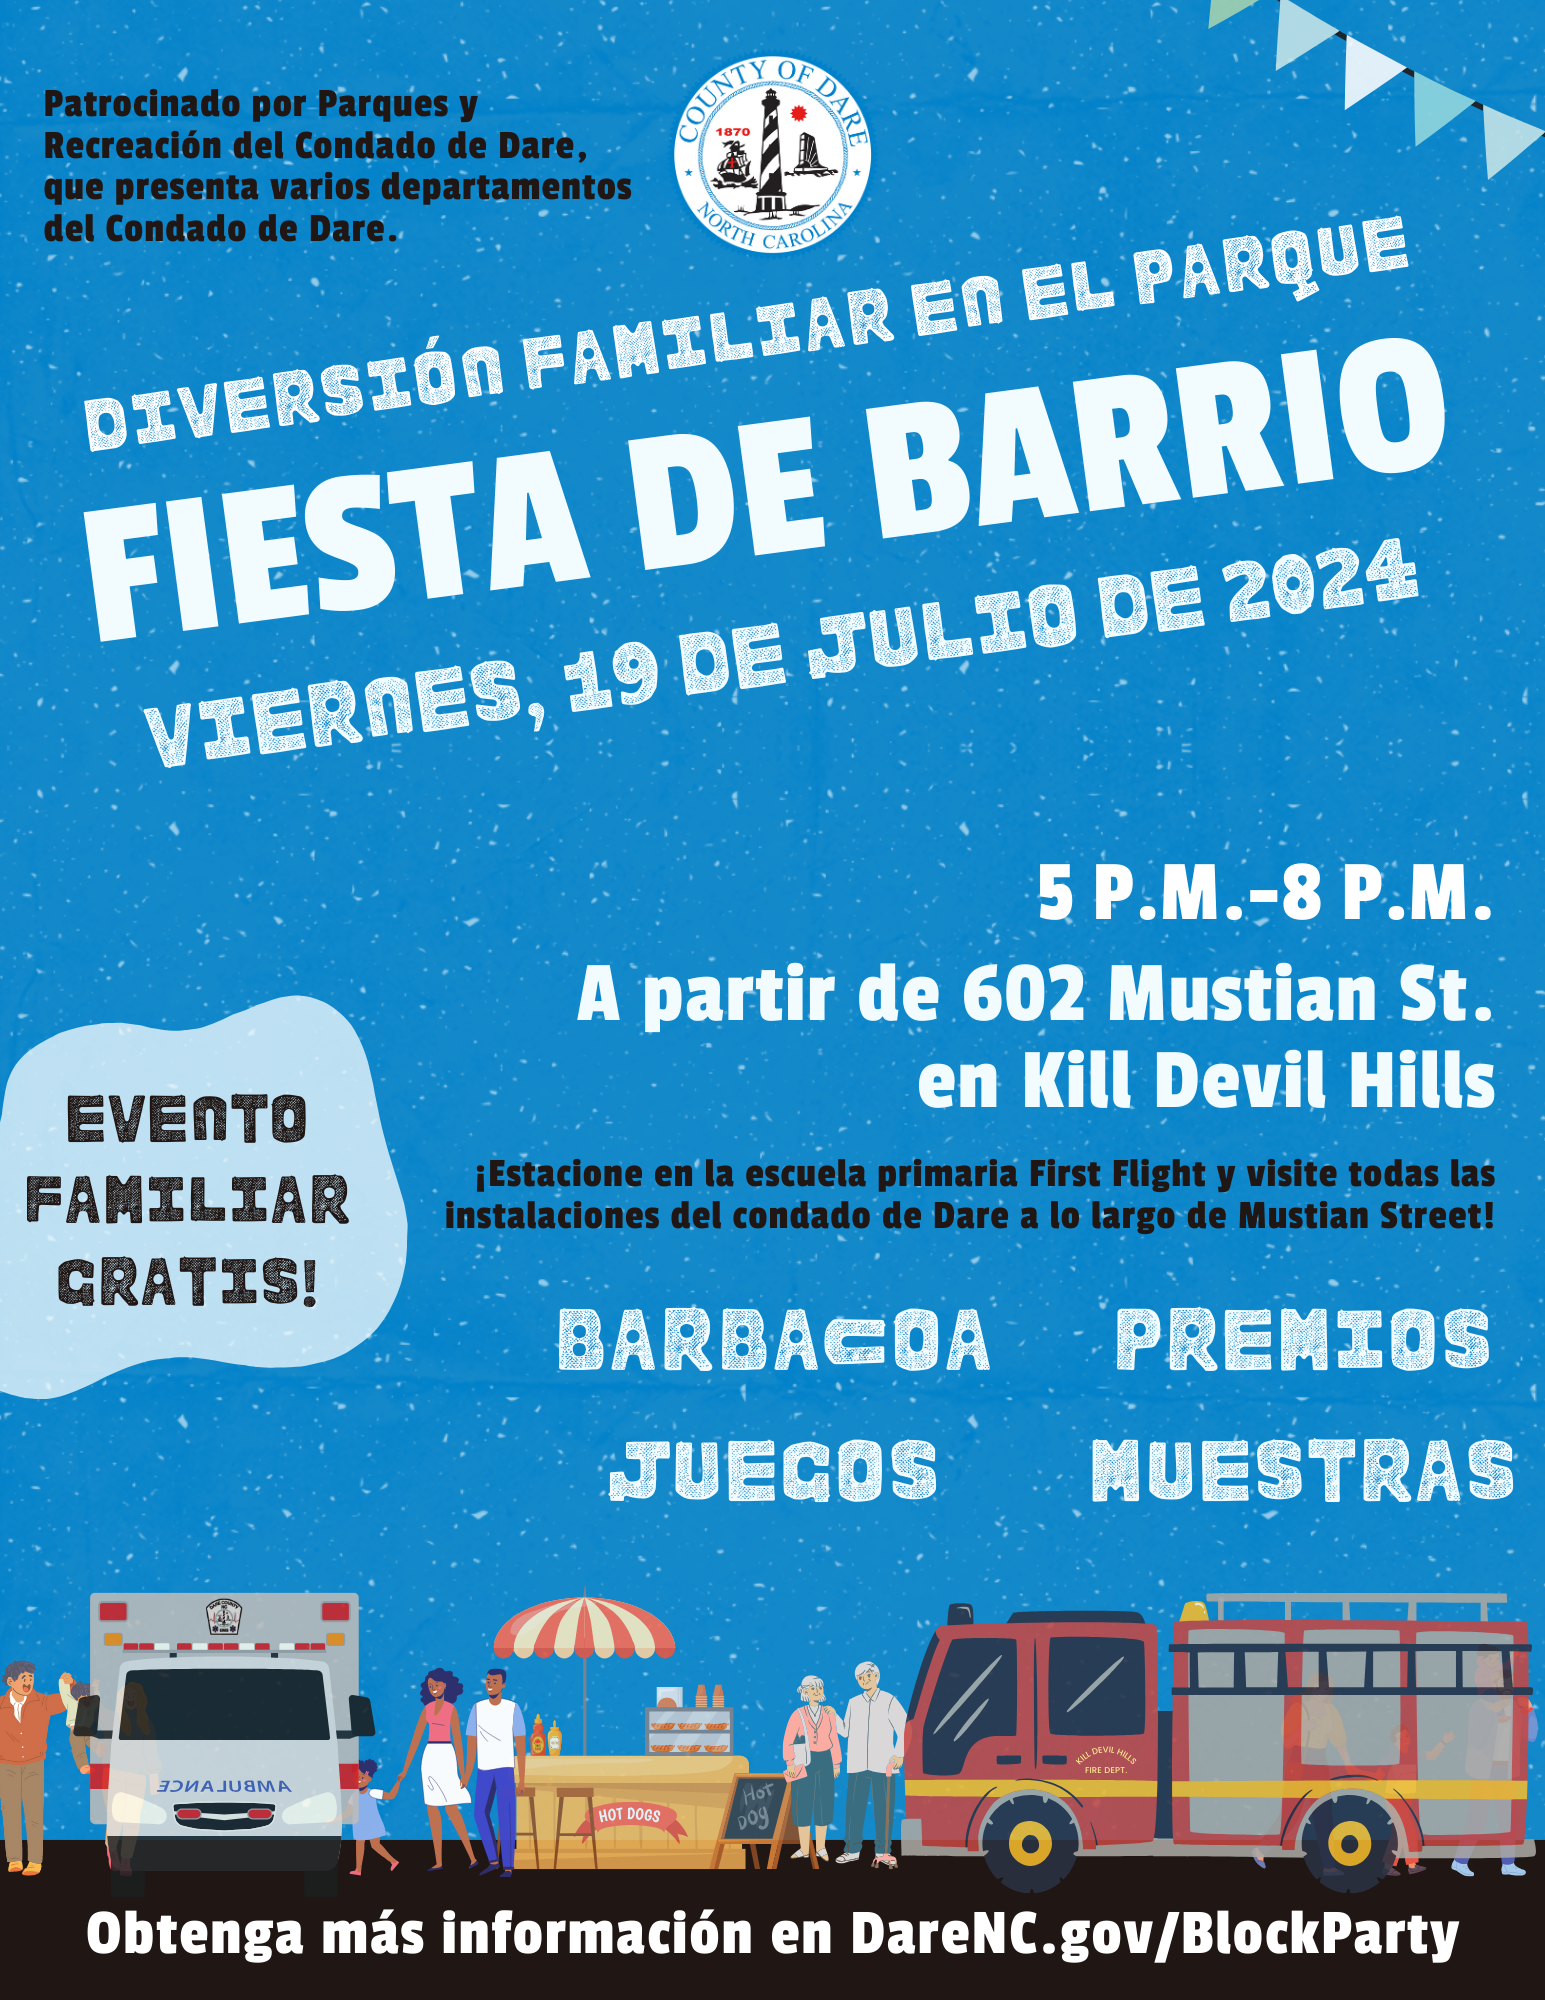 Flyer reads: Diversión familiar en el parque Fiesta De Barrio viernes, 19 de julio de 2024 A partir de 602 Mustian St. en Kill Devil Hills